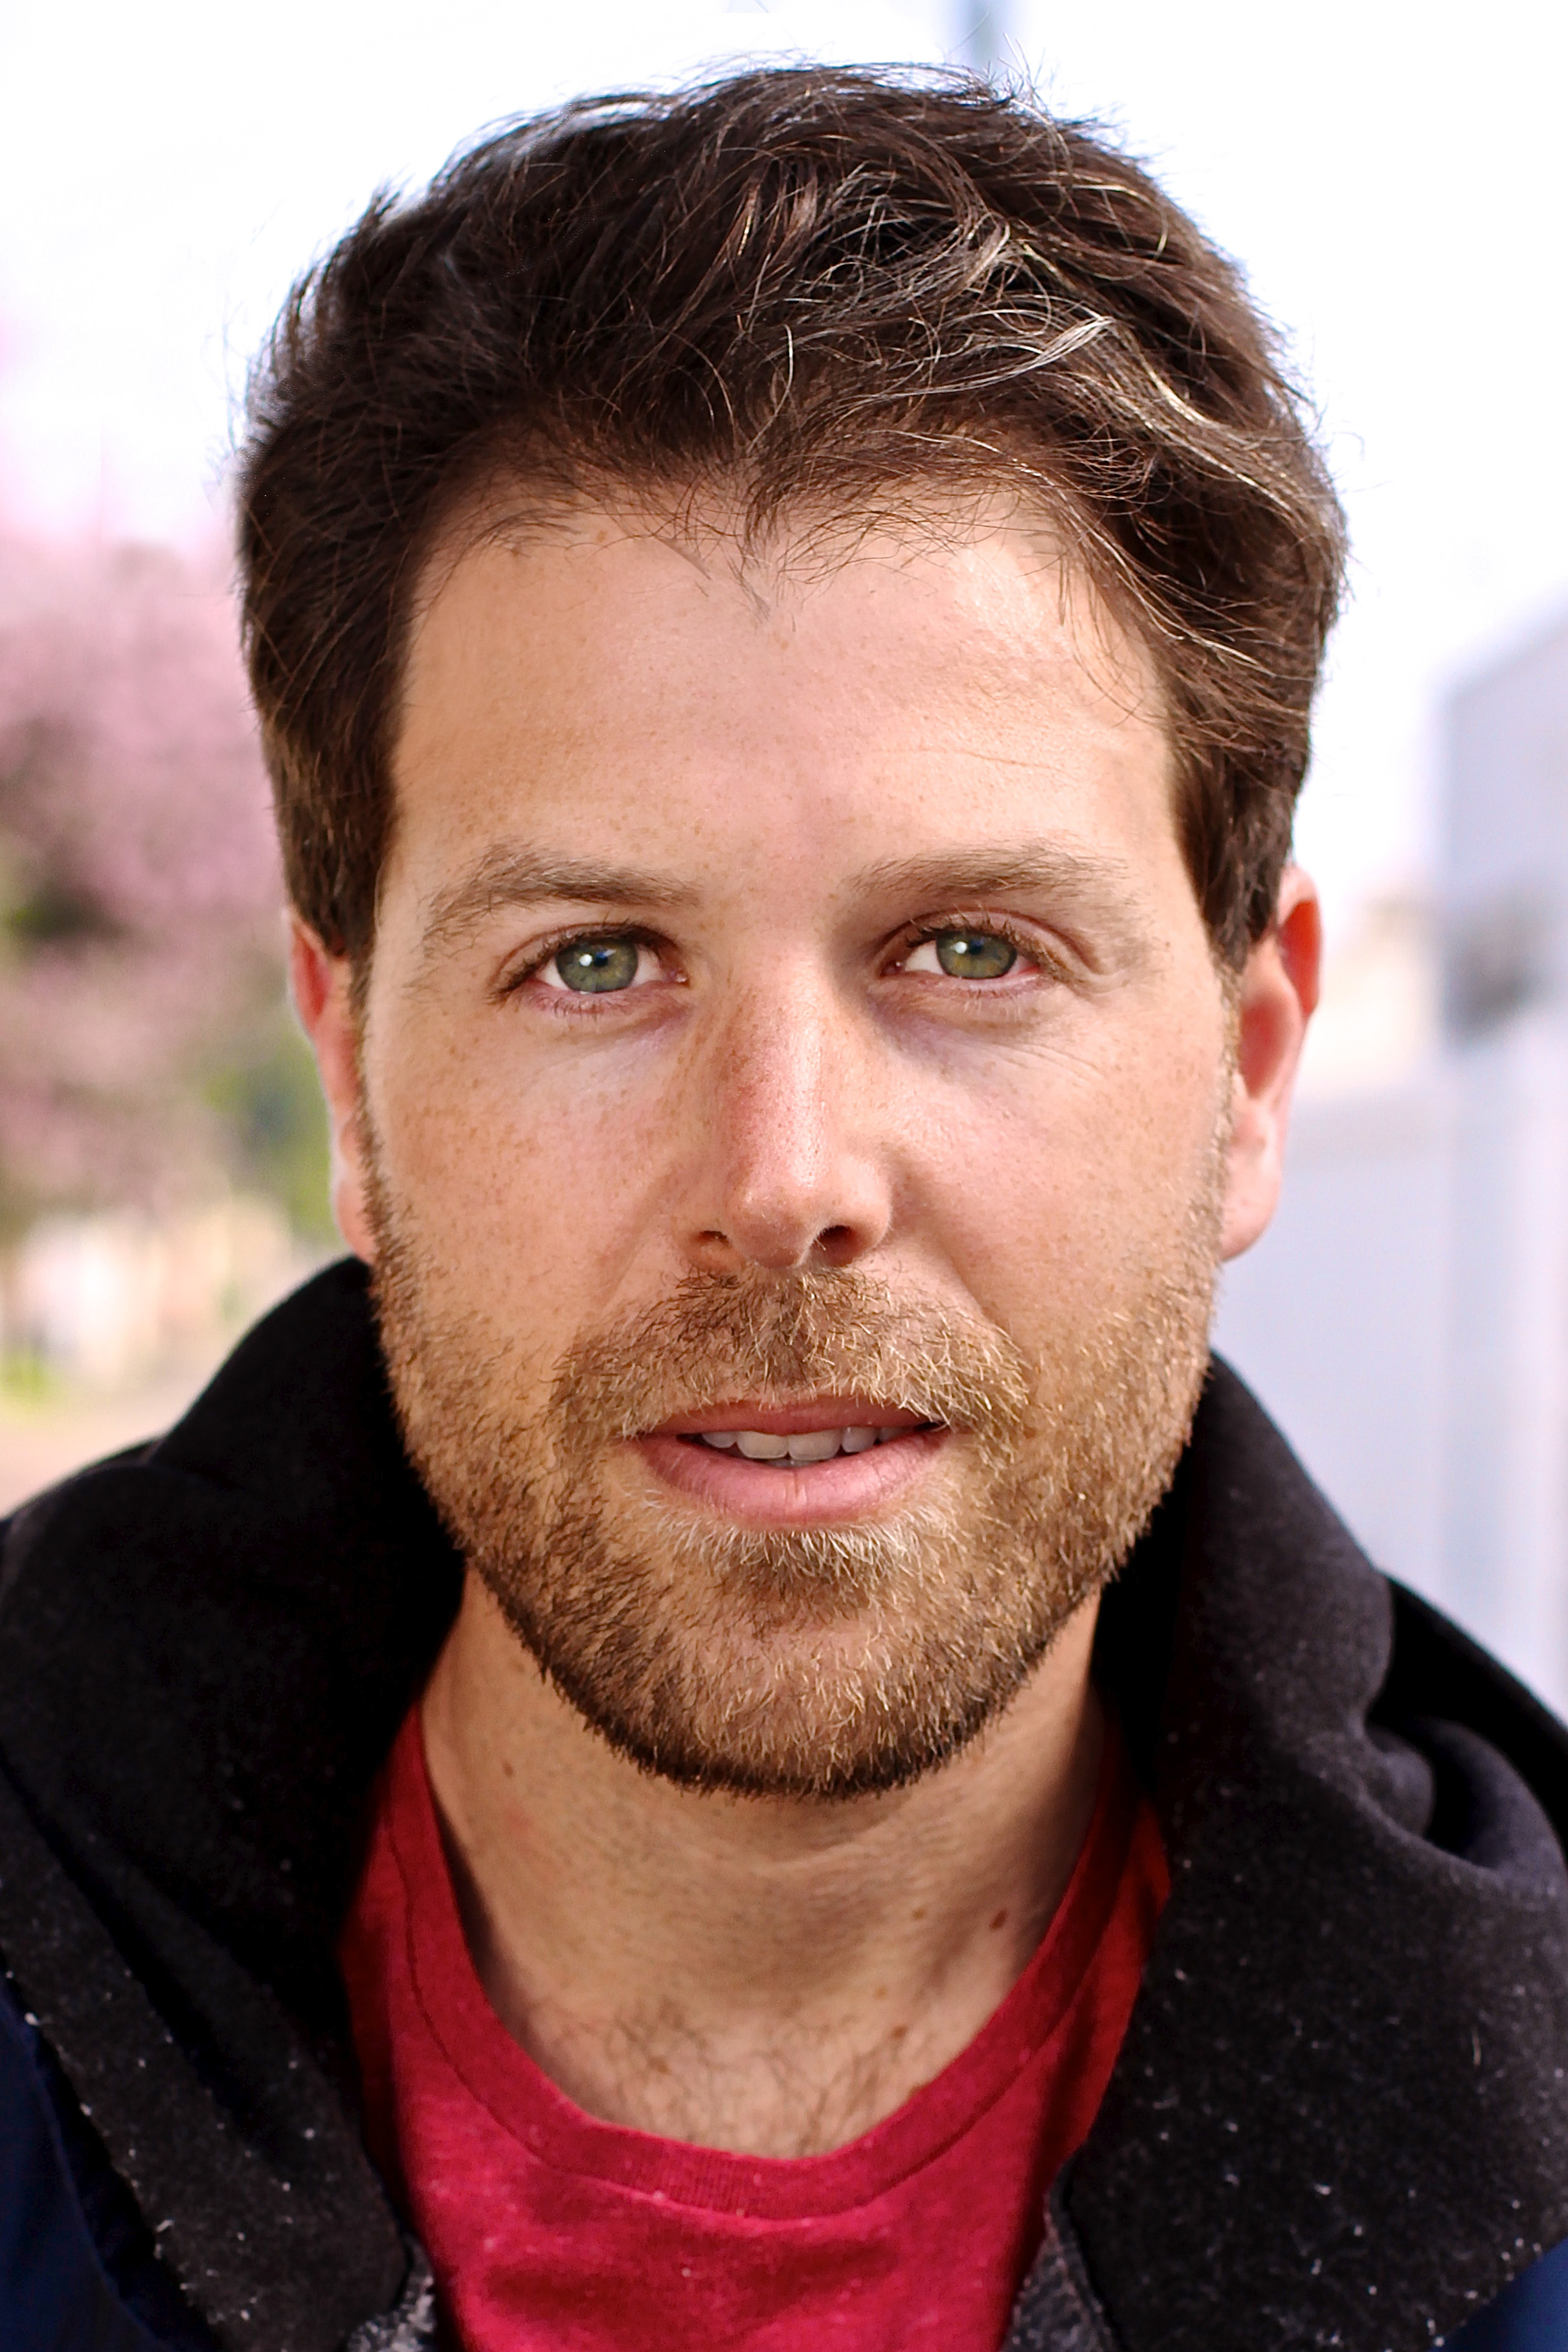 Josh Eichenbaum